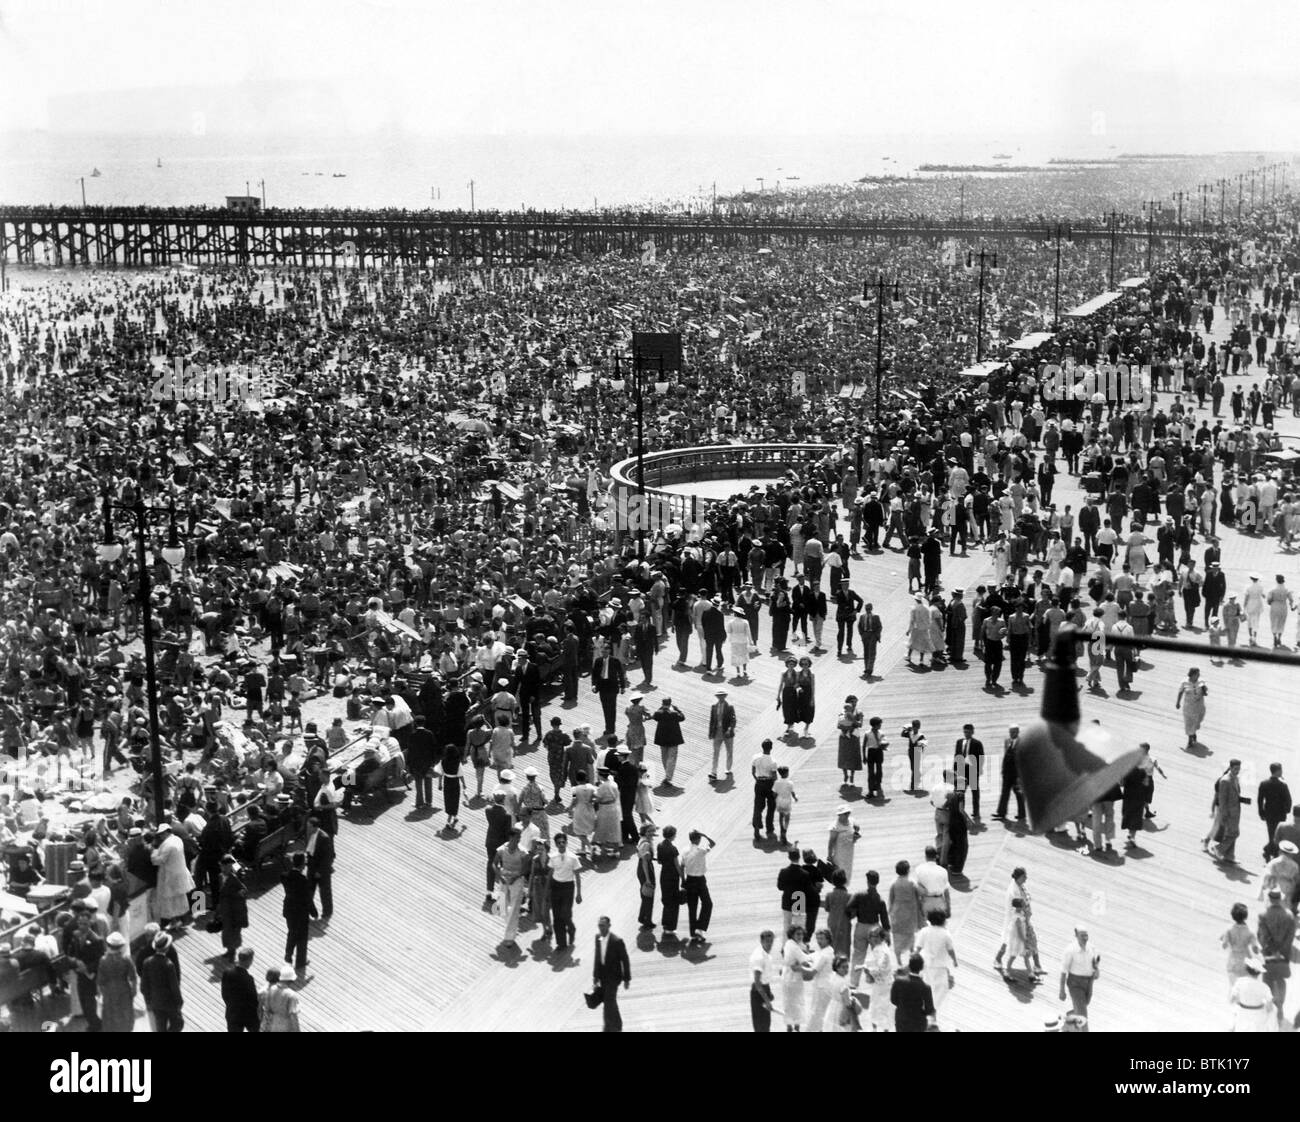 EV1979 - Coney Island, NY, on July 4, 1936 Stock Photo